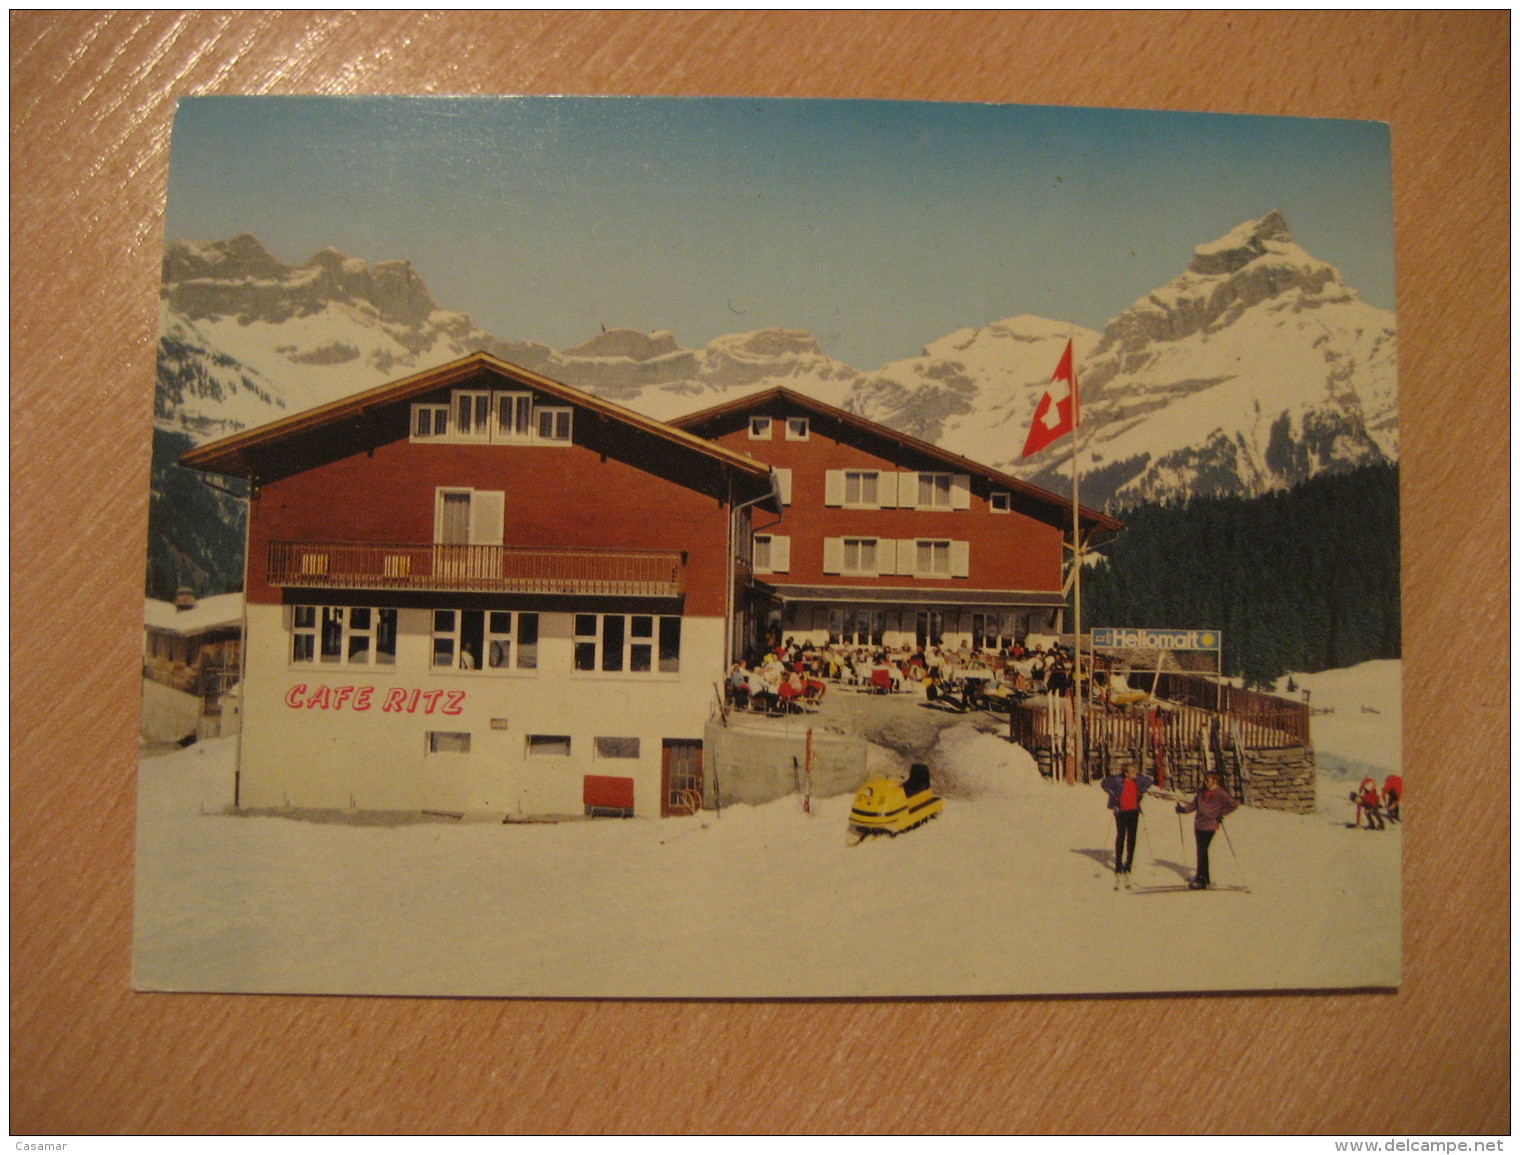 ENGELBERG 1974 DIVING Trampolin Saut Jump Swimming Cancel Post Card Restaurant Gerschnialp SWITZERLAND - Plongée